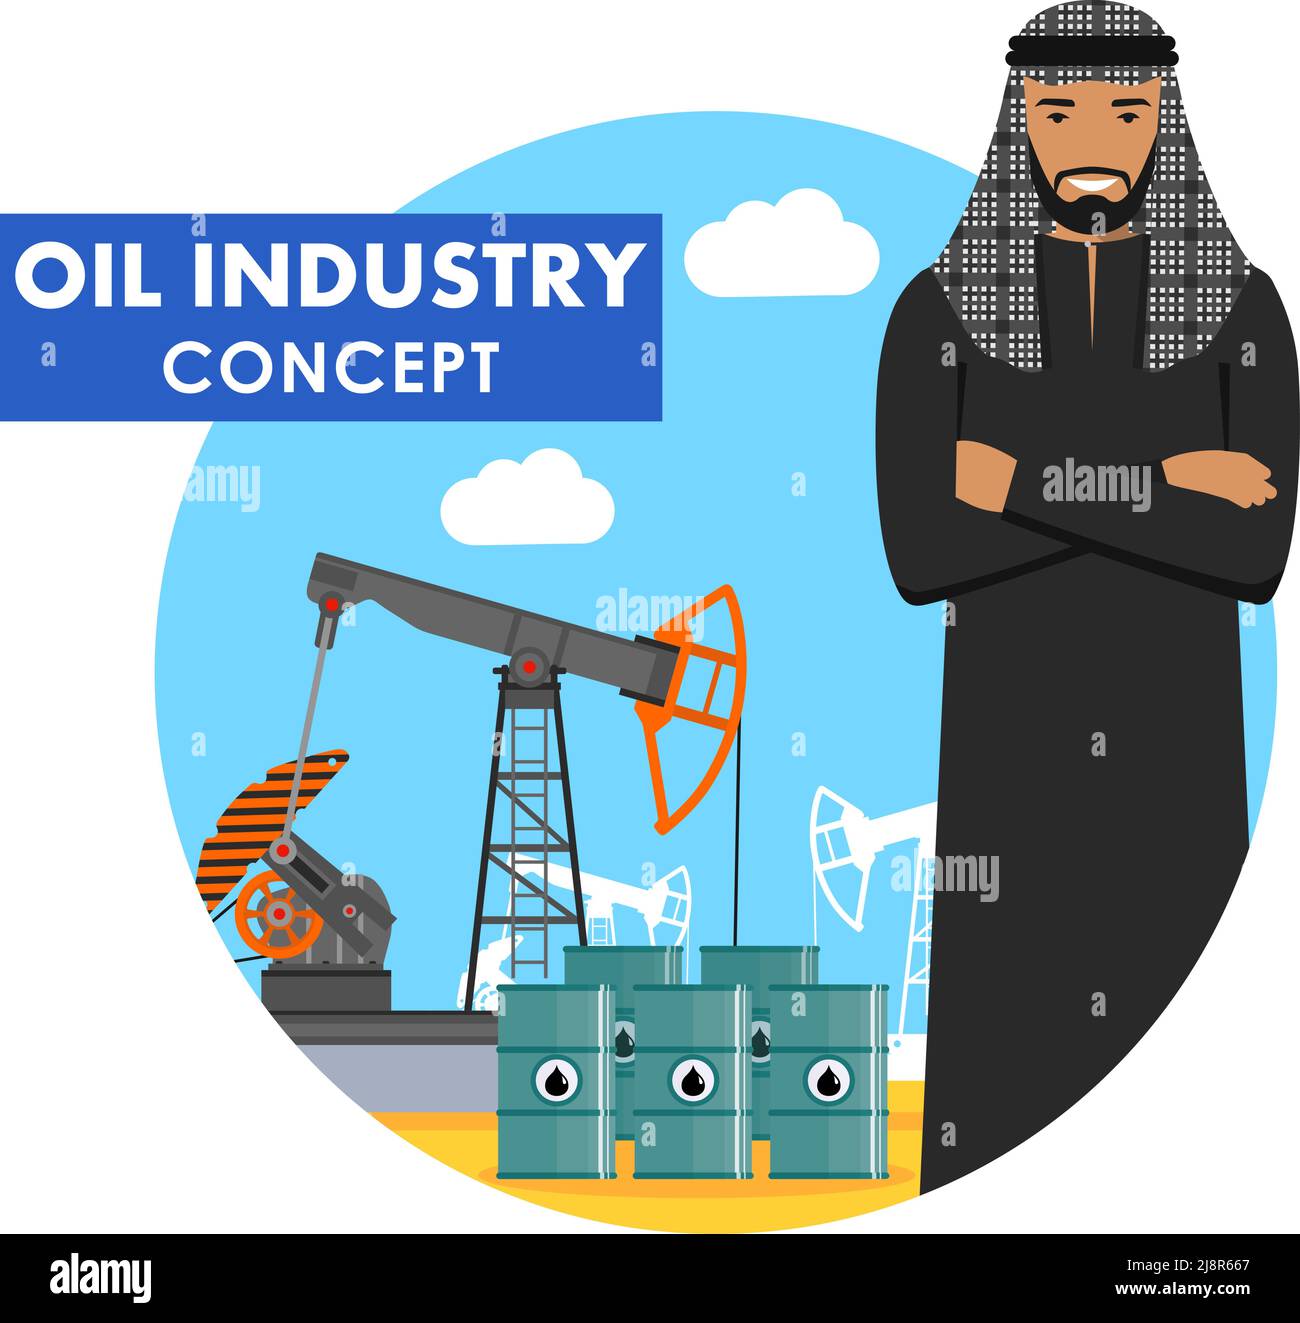 Illustrazione dettagliata di un uomo d'affari musulmano arabo, pompa dell'olio e barili con combustibile in stile piatto su sfondo blu. Illustrazione Vettoriale